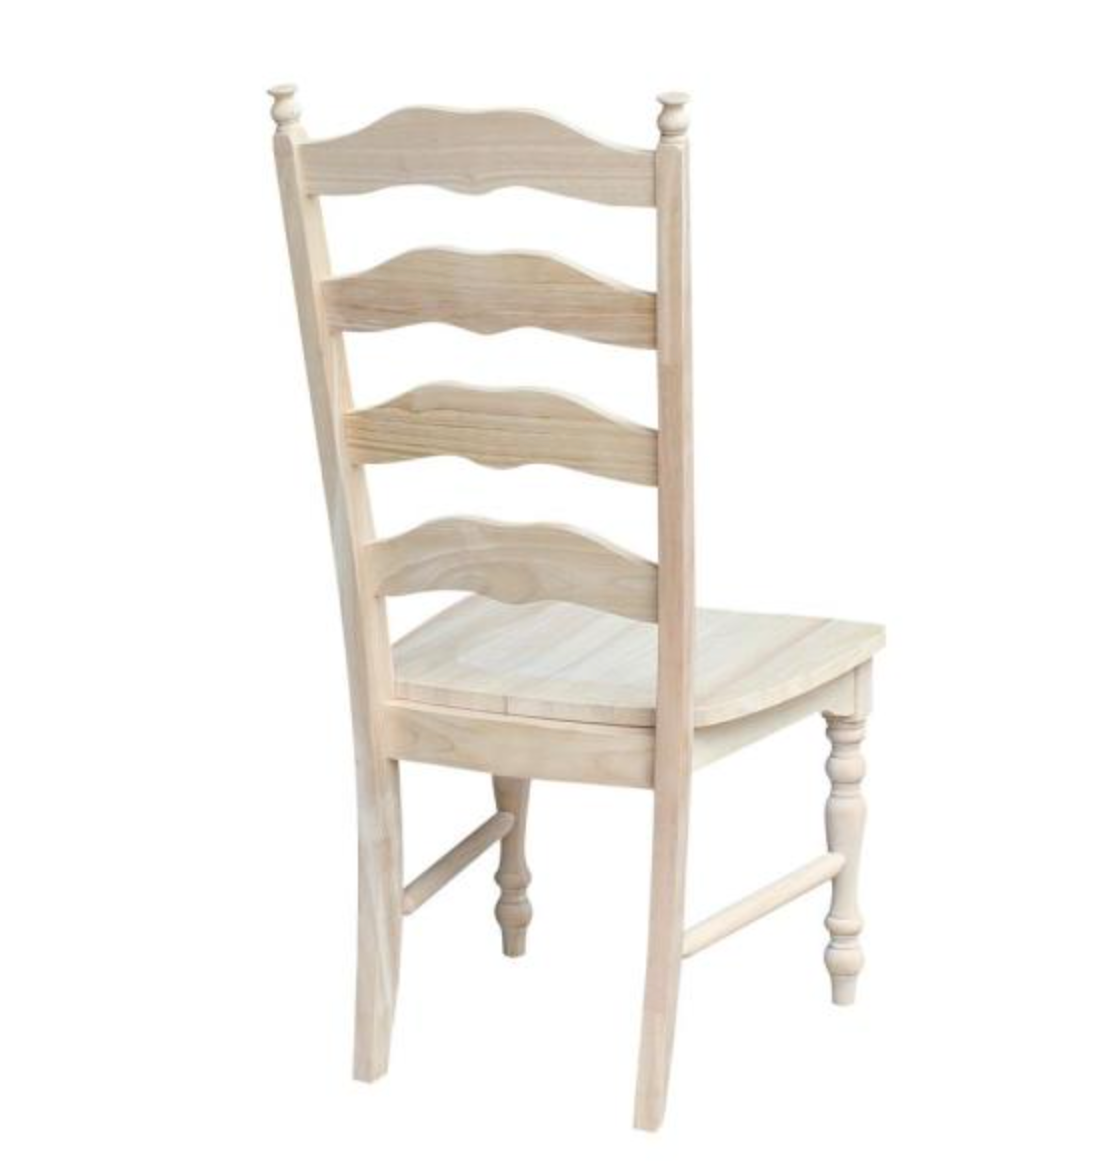 Elegant Ladder-Back Farm Chair